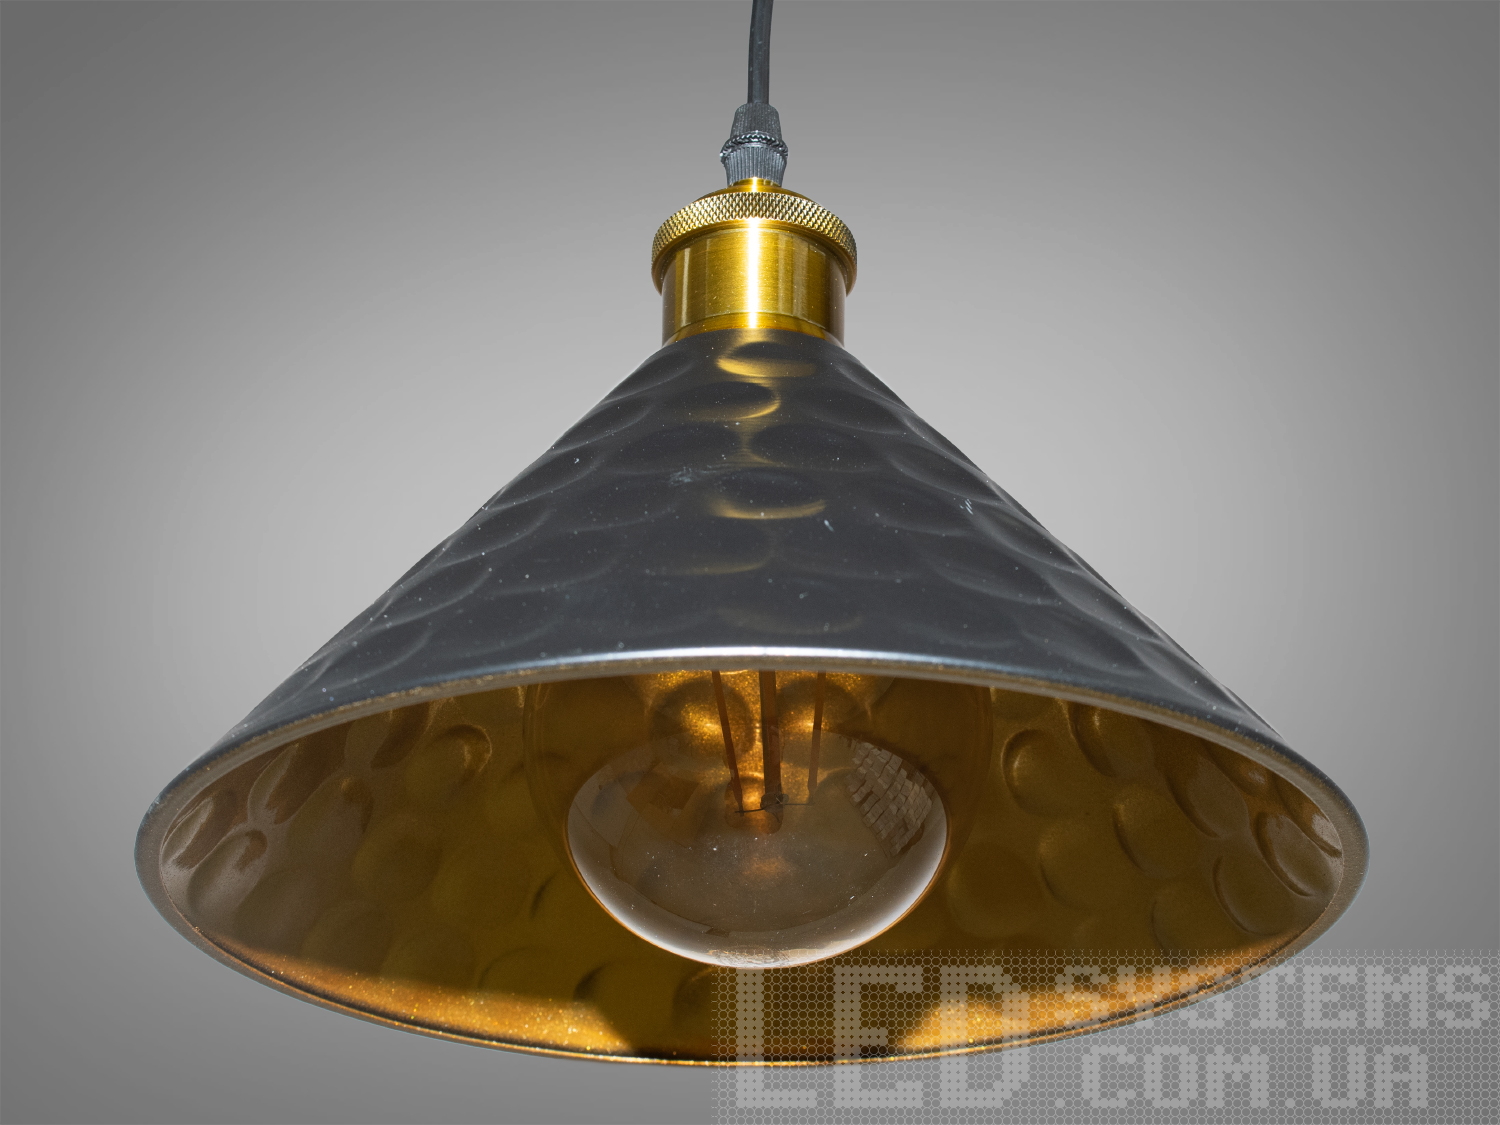 Світильник-підвіс в стилі лофт, який ідеально підходить під лампочку Едісона, об'єднує  у собі вишуканість  та  індустріальний шарм. Його дизайн підкреслює автентичність та теплоту лампочки Едісона, створюючи унікальний елемент декору та освітлення.
Характеристики світильника:
Лампа Едісона як центральний елемент: Спеціально розроблений дизайн, що виділяє та підкреслює лампу Едісона як центральний елемент світильника. Застосування лампи Едісона з декоративними нитками або нестандартною формою додає виробу вишуканості та тепла. Лампочка Едісона надає приємне приглушене світло, створюючи тепло та затишну атмосферу в місці розташування світильника.
Матеріали з індустріальним виглядом: Використовуються металеві або чорні матеріали, що надають індустріальний шарм та вишуканість. Мінімалізм цього світильника підкреслить вашу індивідуальність і відчуття стилю. Металеві елементи можуть мати сліди старіння, підряпини чи інші недоліки, що є характерними для стилю лофт та надають світильнику виразний вигляд.
Лофтовий дизайн: З підвісом у вигляді ланцюга чи троса, грубими металевими деталями та відкритим дизайном, що додає стиль лофту. Стиль «Лофт» зараз дуже популярний, його люблять як творчі особистості, так і вельми практичні люди, які віддають перевагу комфорту і простоті в інтер'єрі. Світильники в стилі «лофт» ідеально впишуться в сучасні будинки, квартири, кафе, арт-простори, коворкінги, квеструми.
Підвісний світильник ідеально поєднується з іншими індустріальними деталями, такими як відкриті труби, цегла або металеві стільниці.
Можливість регулювання висоти: Дозволяє легко адаптувати світильник до різних просторових умов.
Сфери використання:
Ресторани та кафе: Створює тепло та затишне освітлення, ідеально підходить для створення атмосфери в зонах обіду або бару.
Житлові приміщення: Виглядає чудово у вітальнях, кухнях чи спальнях, додаючи індустріальний акцент до інтер'єру.
Магазини та виставкові зони: Створює стильний вигляд для приміщень, де важливий дизайн та видиму привабливість. Вигідно підкреслює стильні товари або предмети мистецтва, надаючи їм індивідуальний вигляд.
Фото- та відеостудії: Забезпечує освітлення з характером для створення унікальних фото чи відеоматеріалів.
Цей світильник-підвіс у стилі лофт з лампочкою Едісона створює особливу атмосферу, де тепло та стиль індустріального дизайну взаємодіють, надаючи приміщенню унікальний і вишуканий вигляд.
Лампа в комплект не входить.